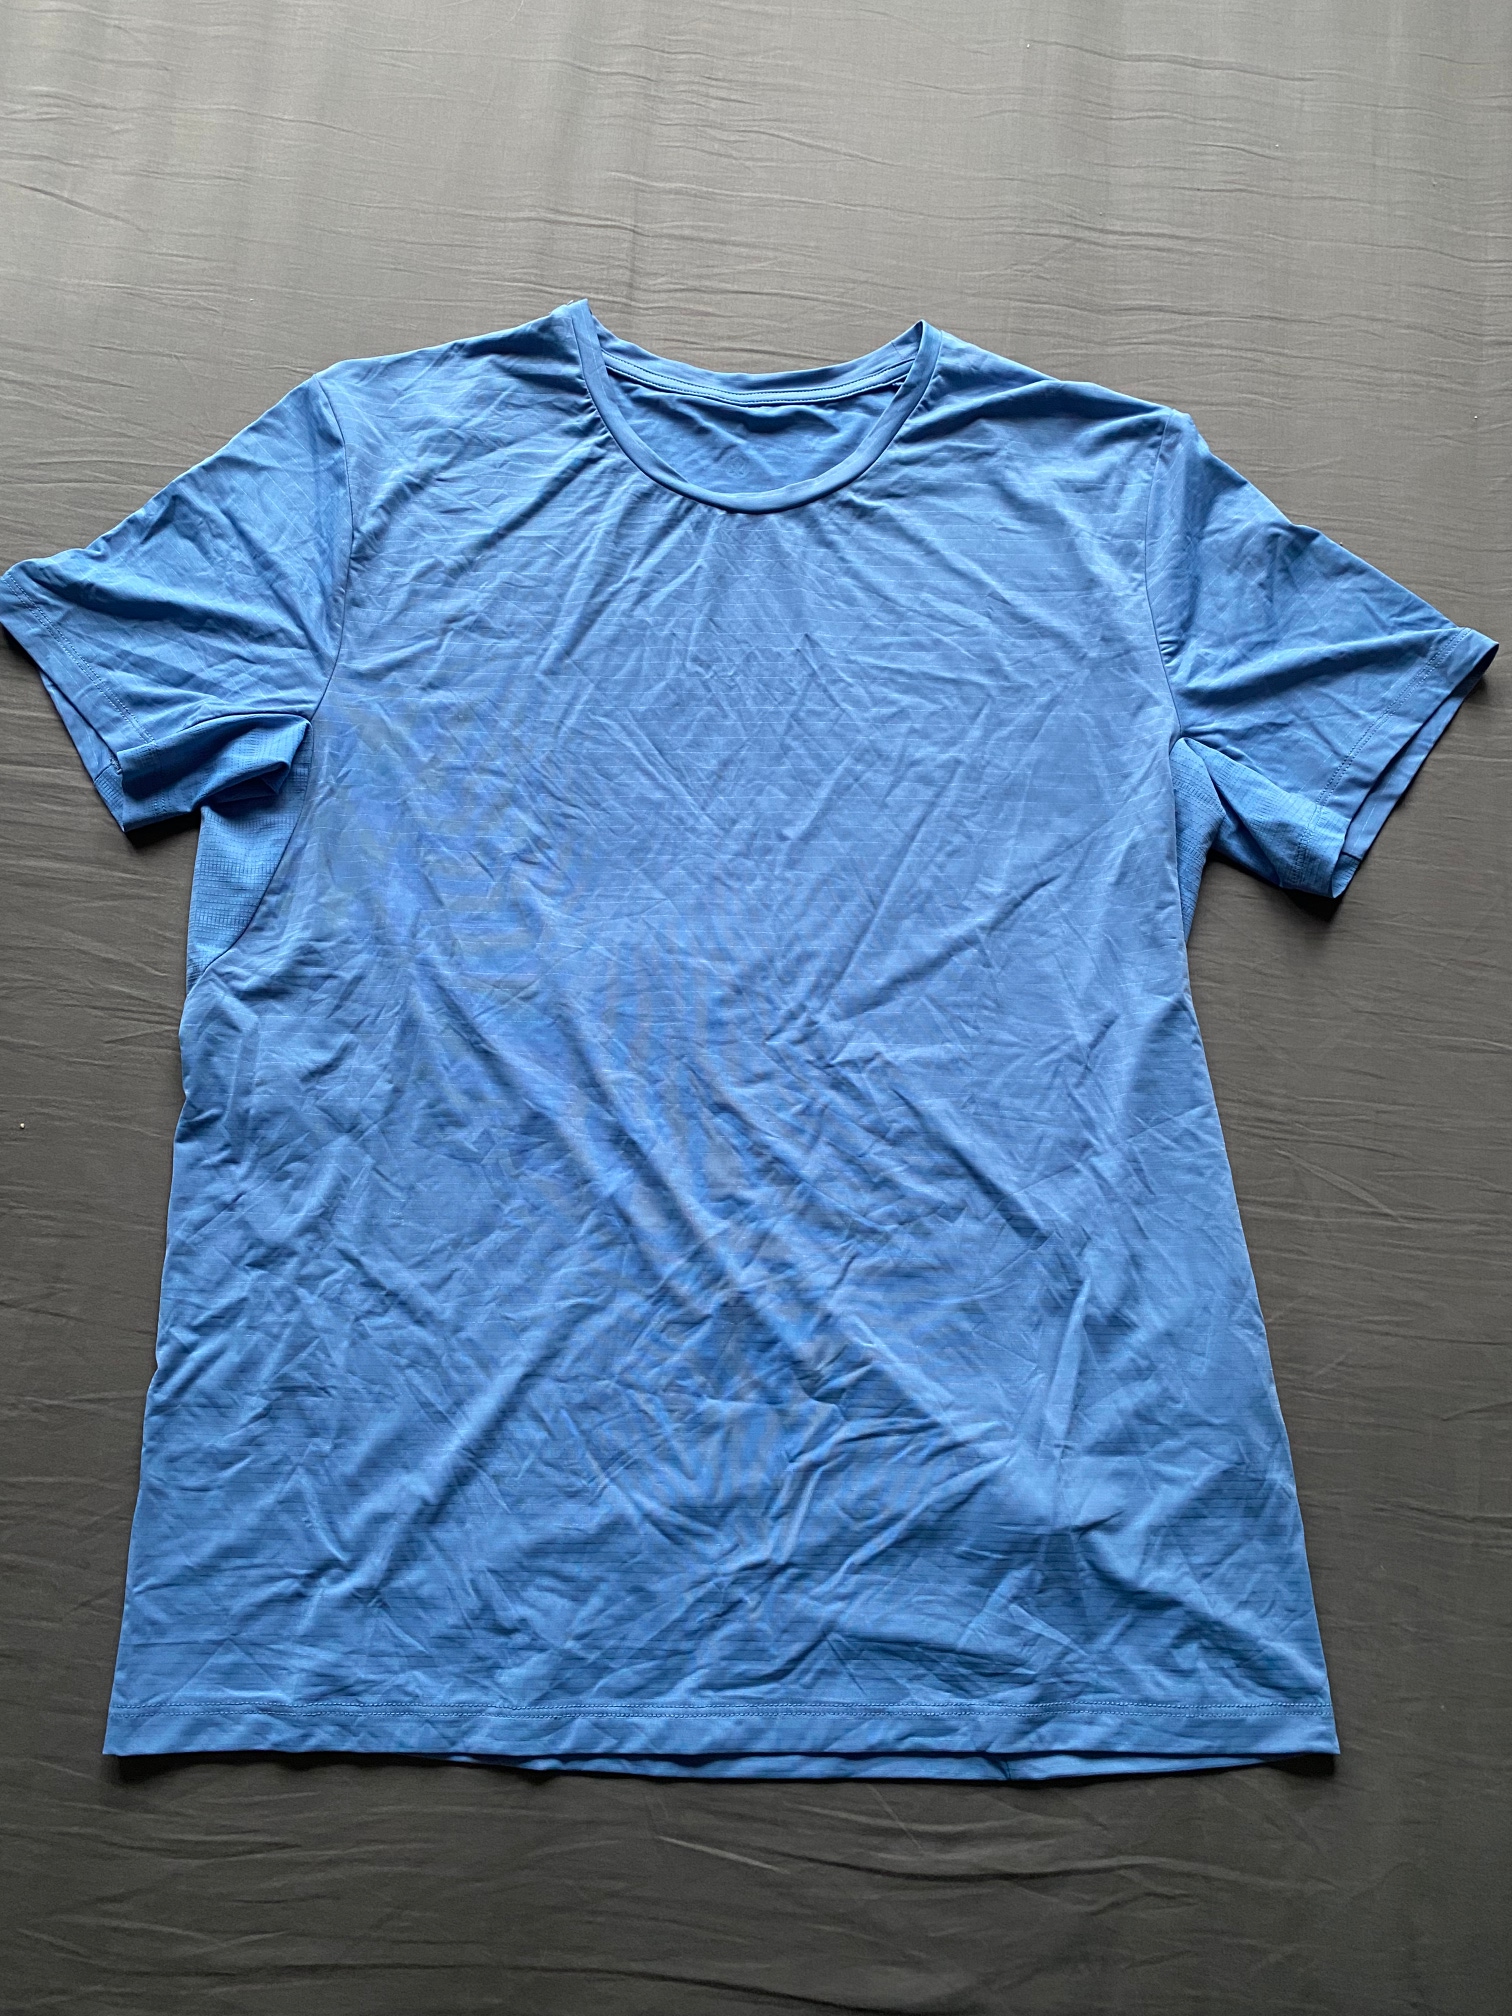 Lululemon Shirts  Used and New on SidelineSwap